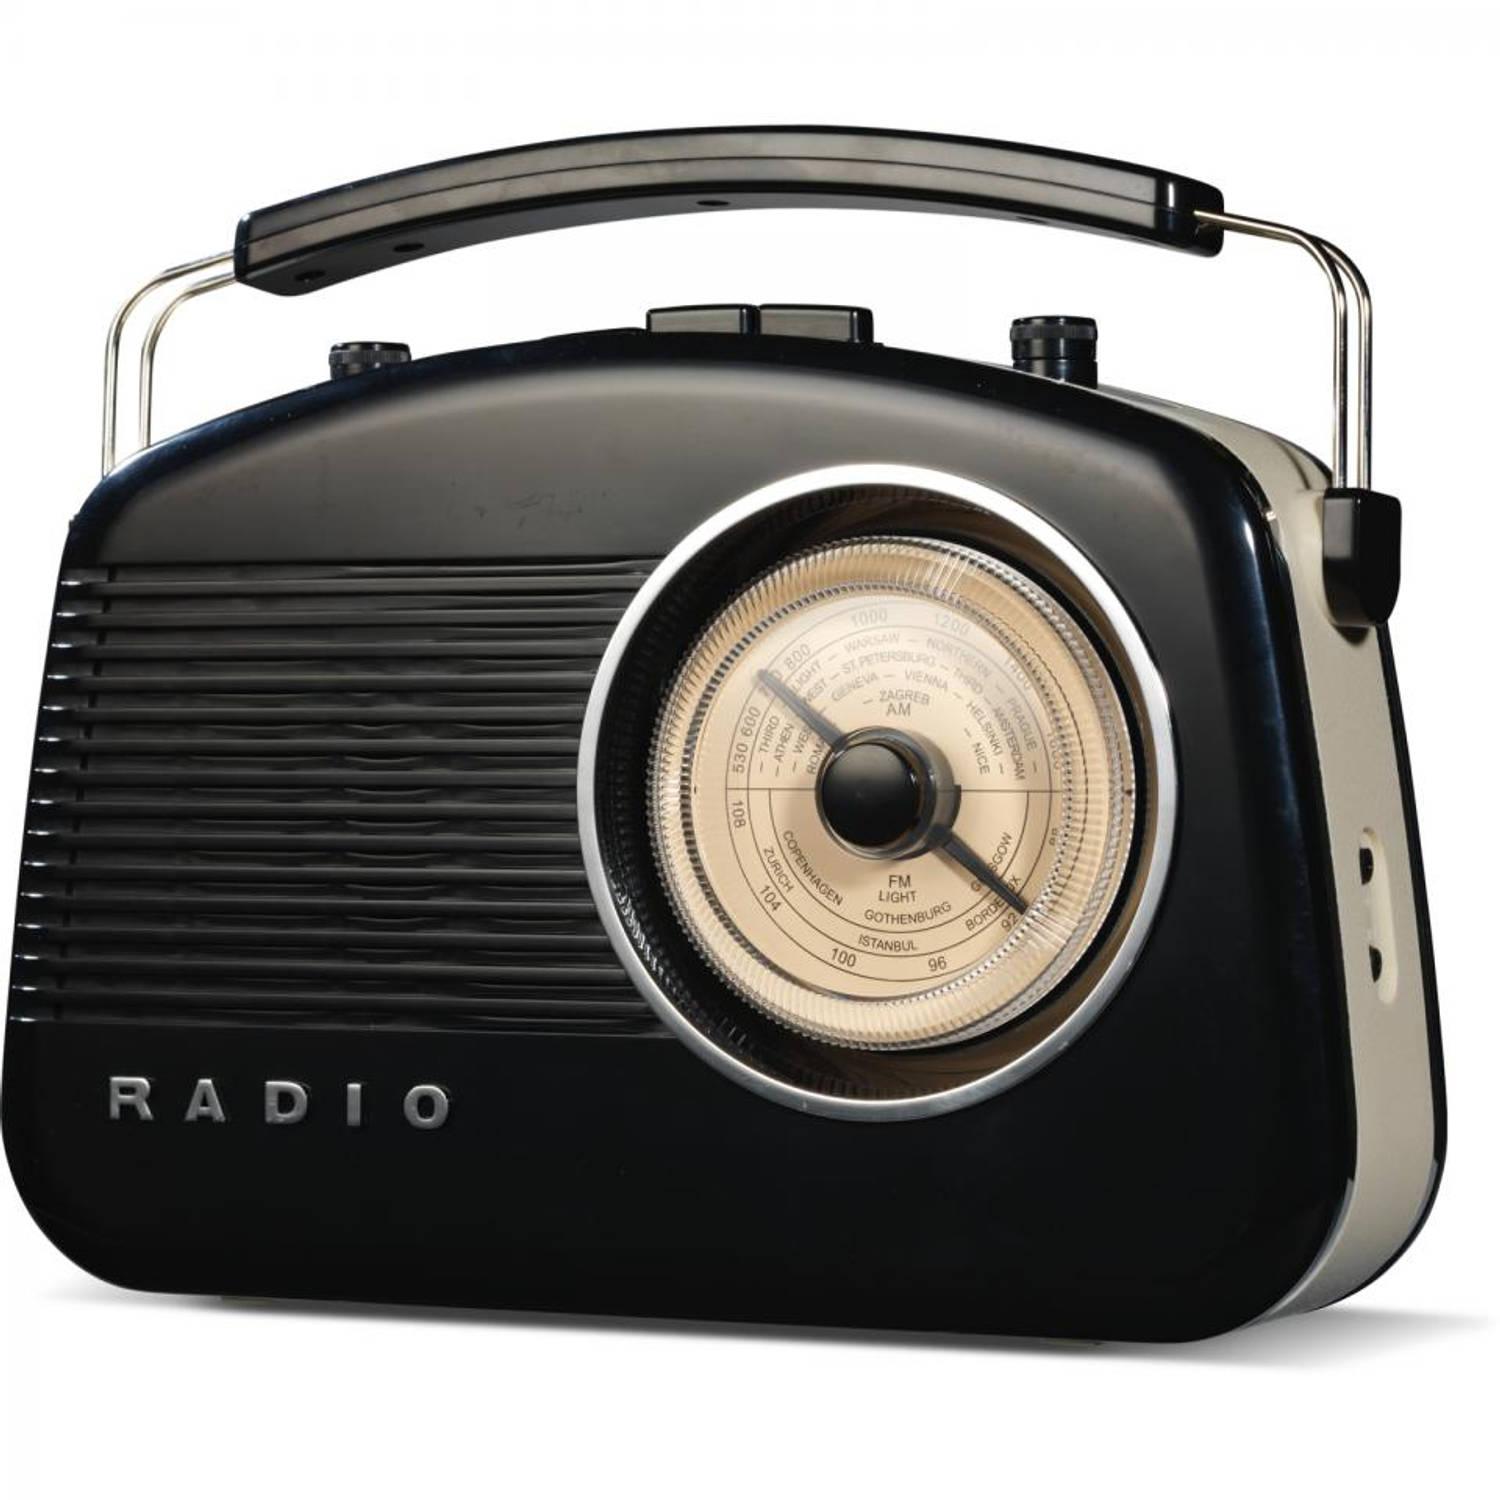 Alsjeblieft kijk leerling overdrijving Retro radio FM/AM - zwart | Blokker